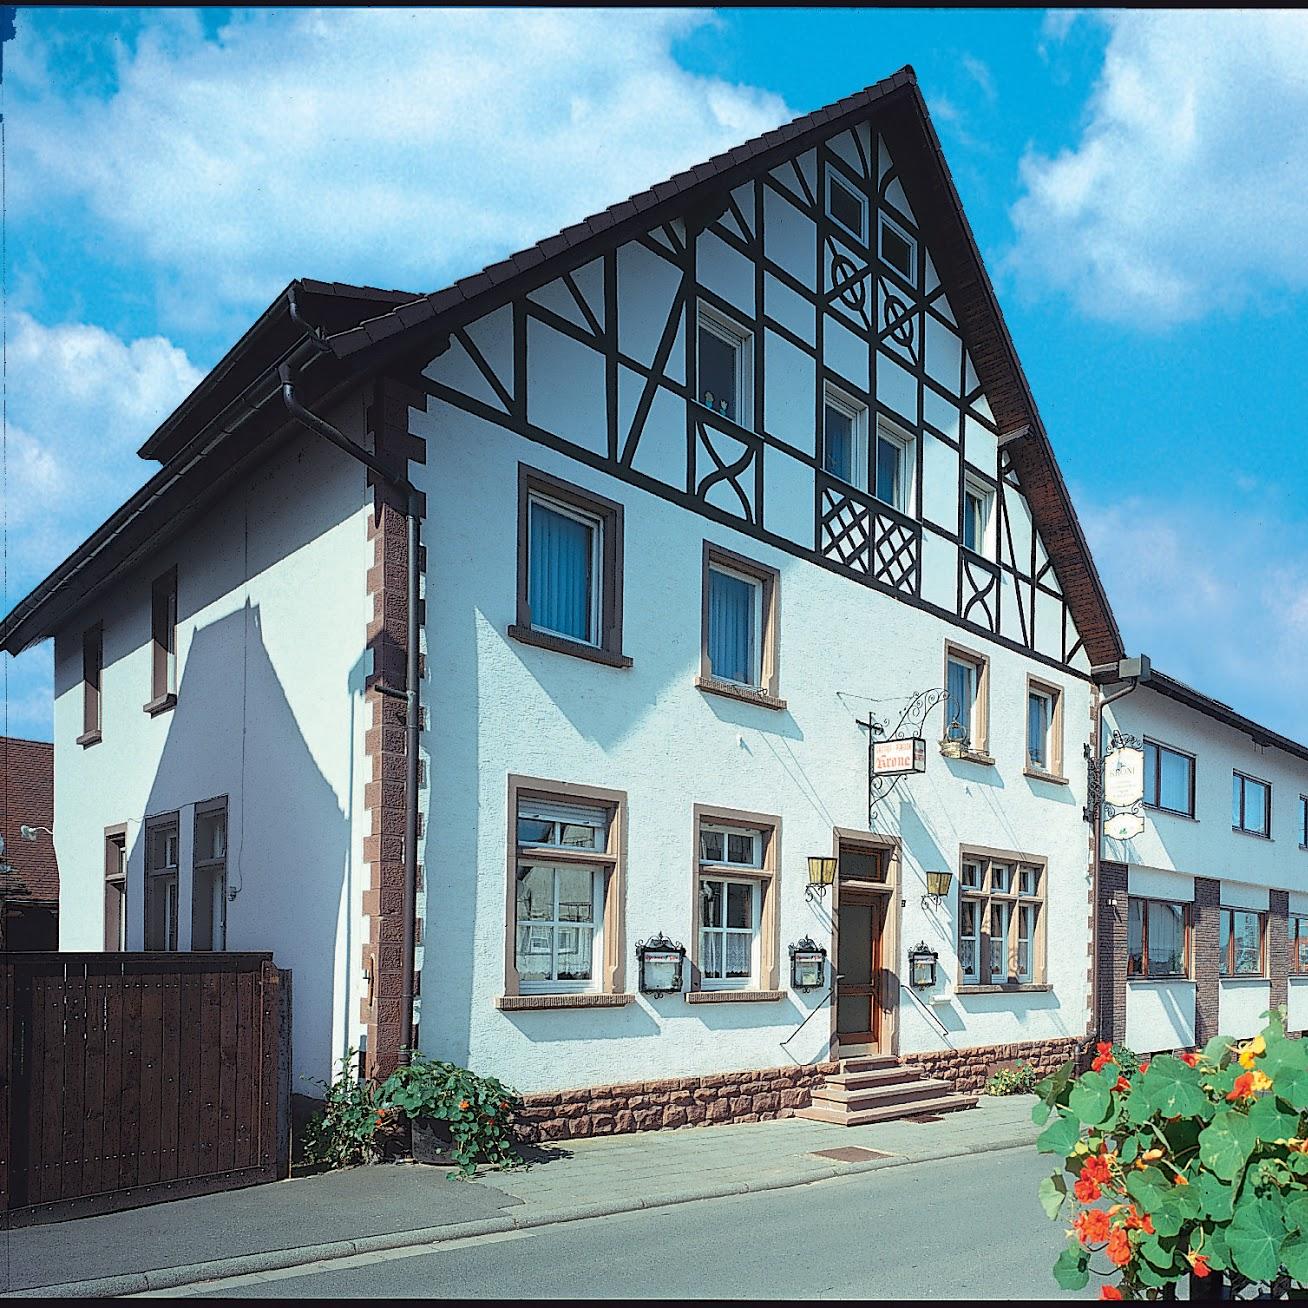 Restaurant "Gasthof Krone" in Mönchberg